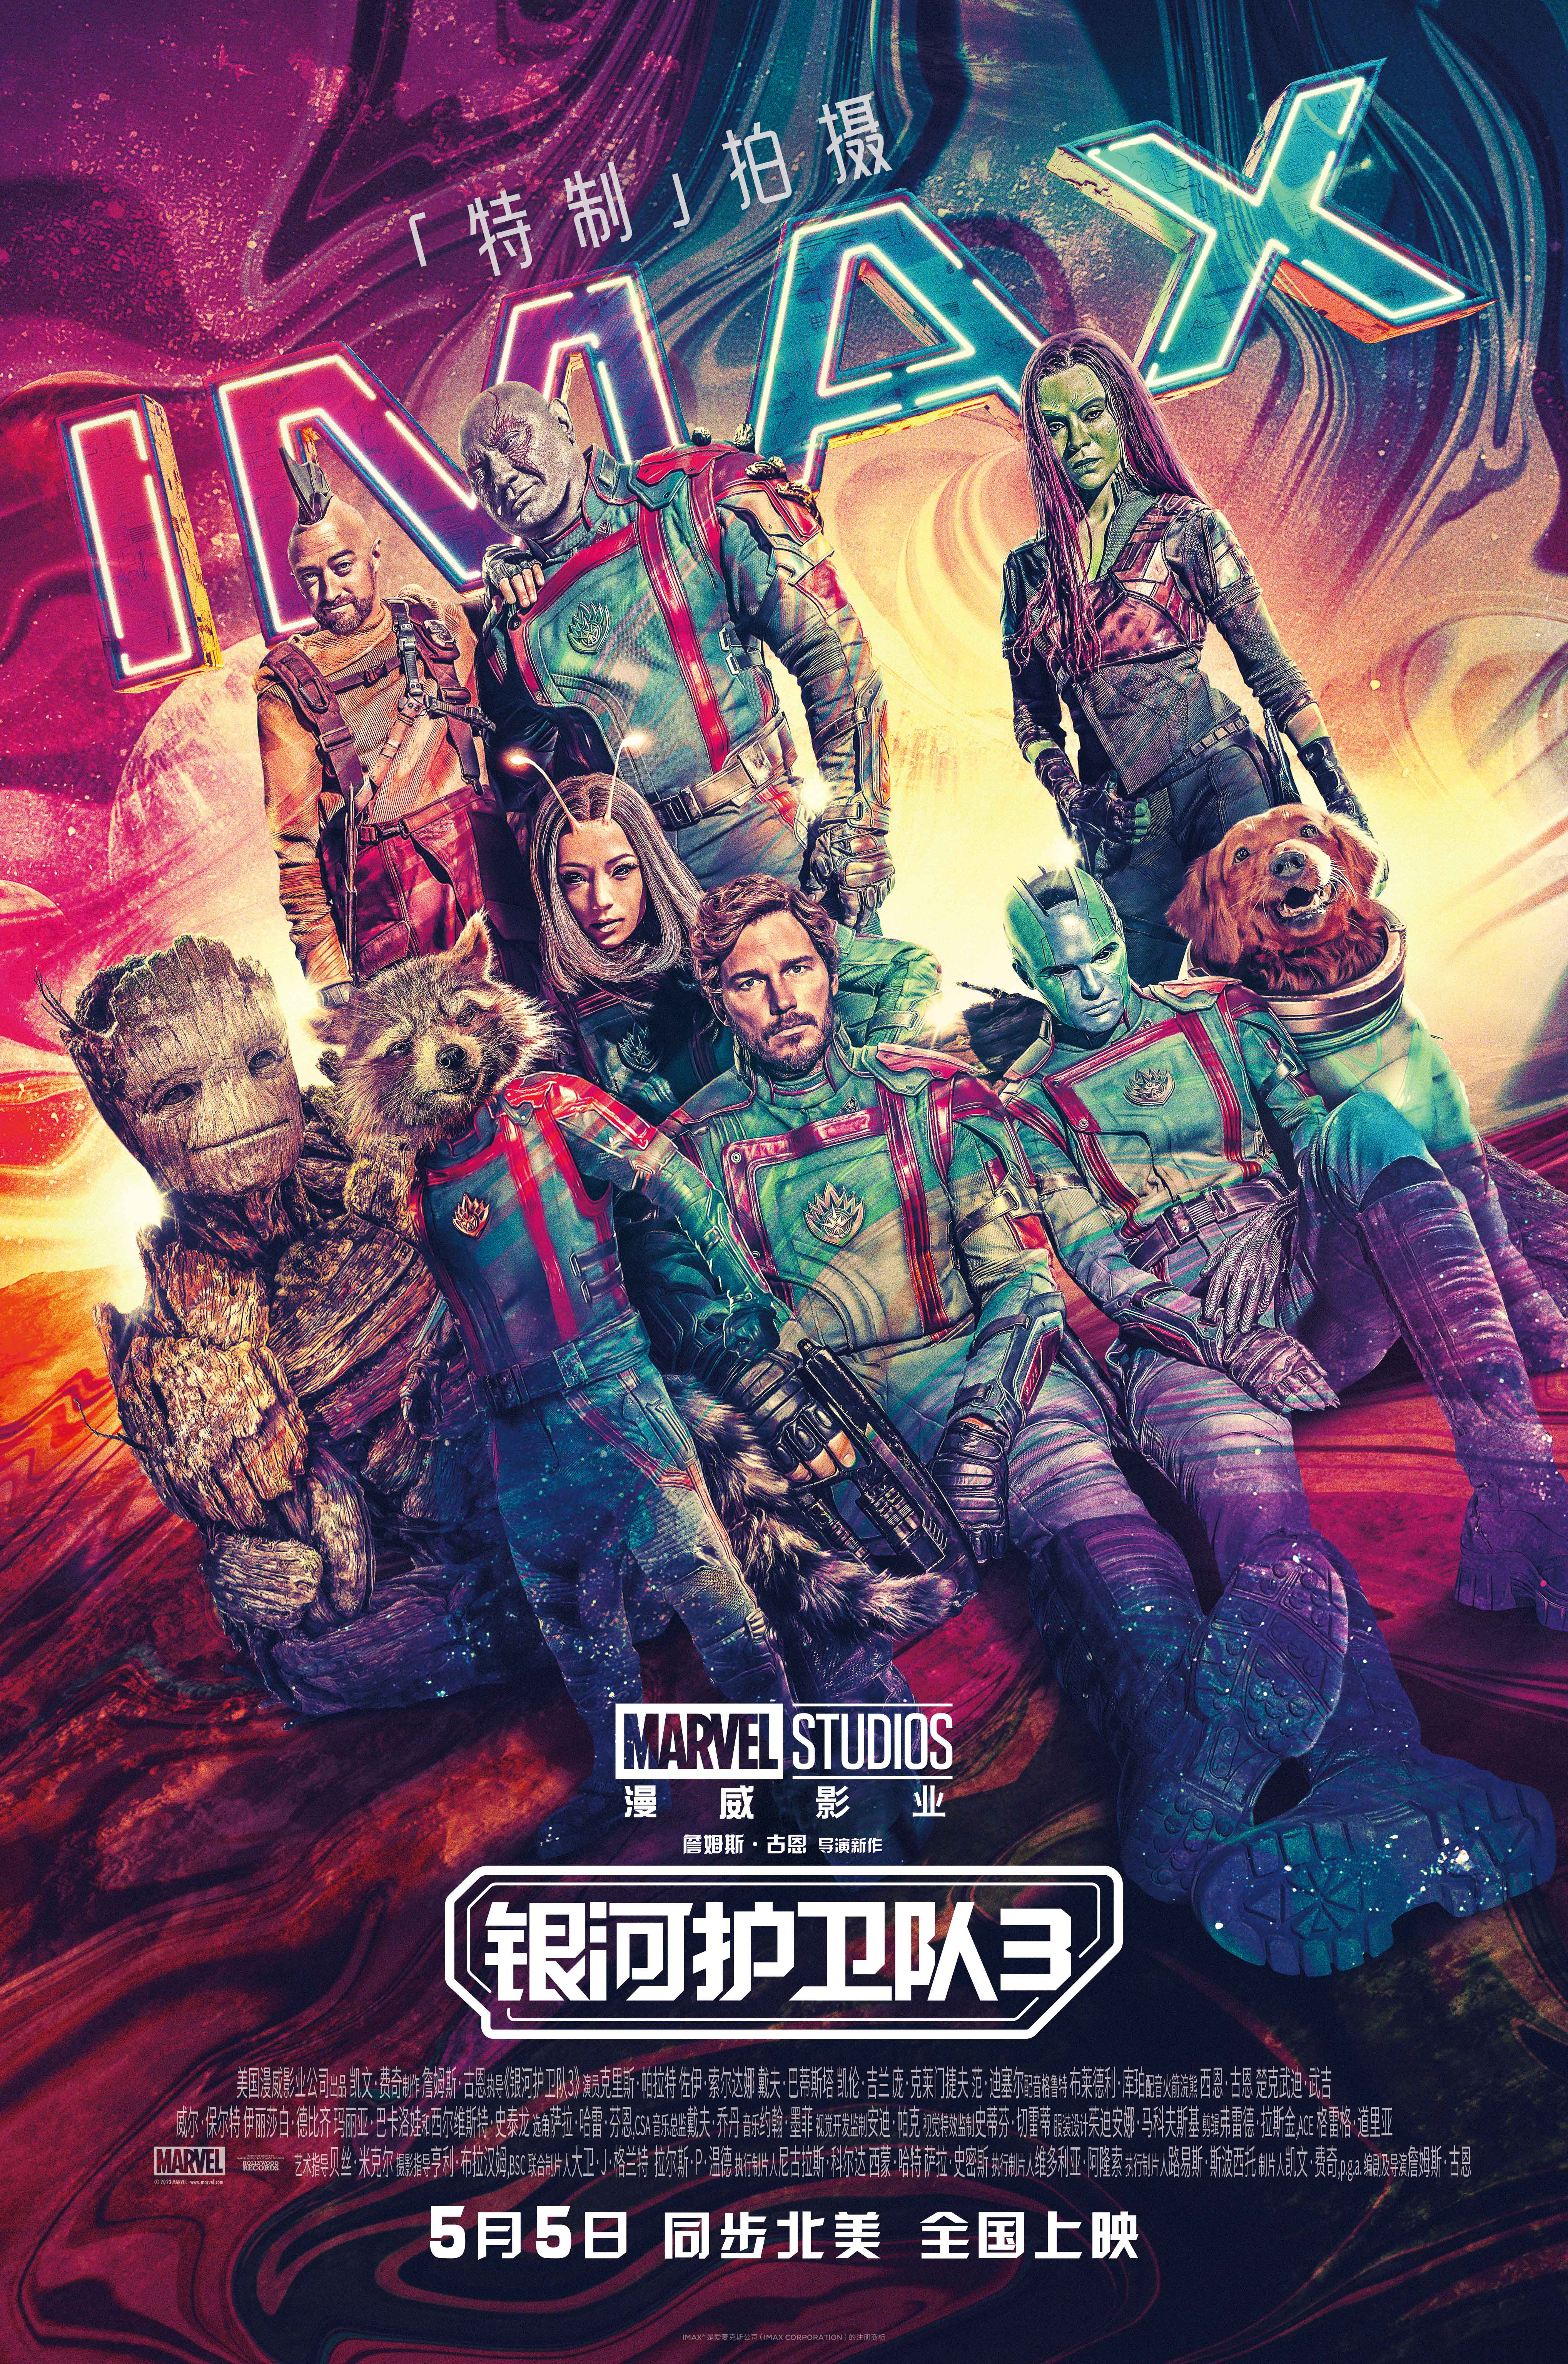 《银河护卫队3》专属海报发布 银河天团炫酷回归